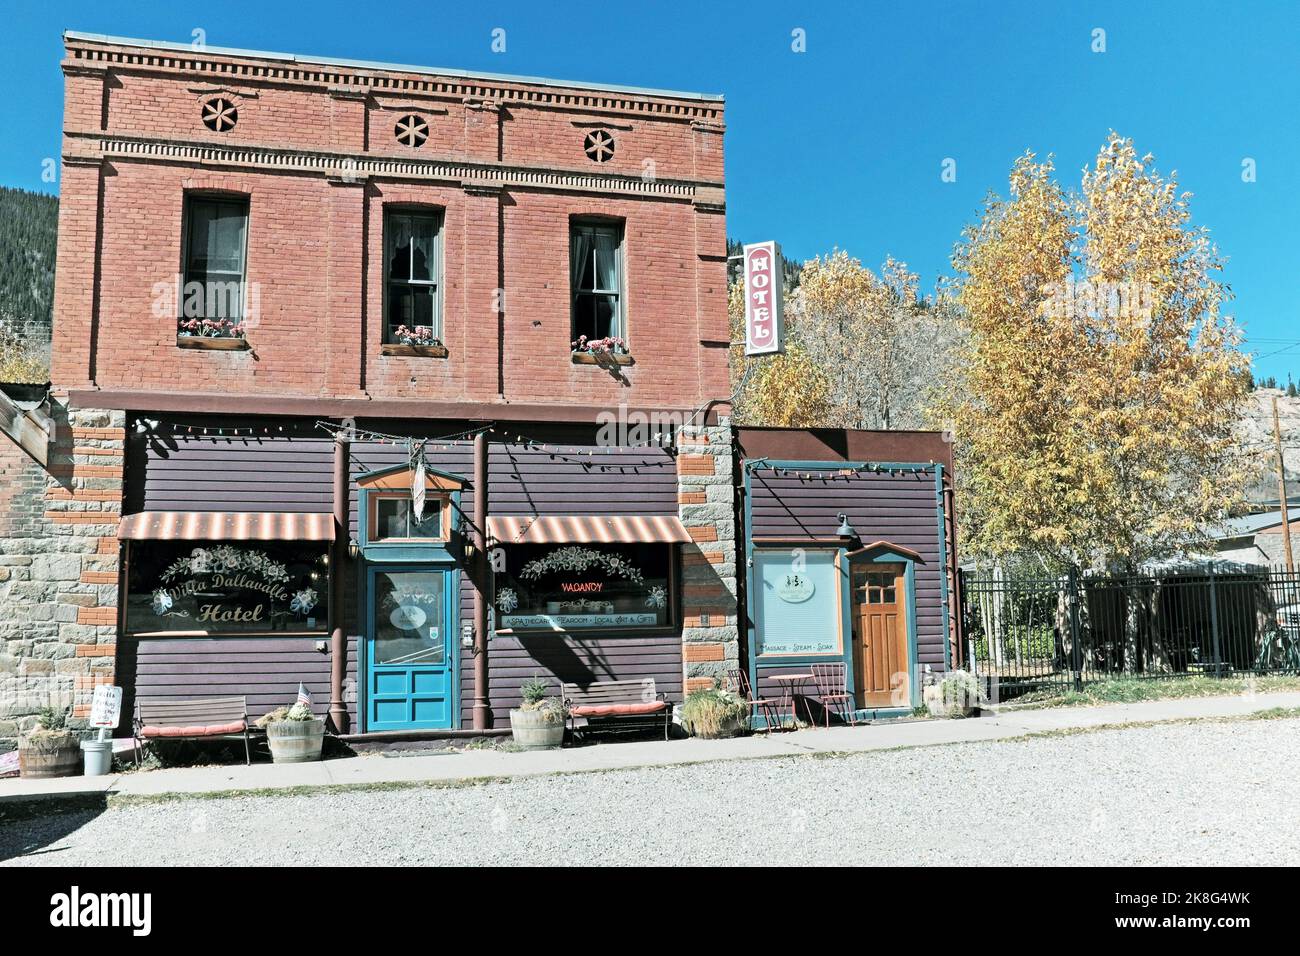 Villa Dallavalle Historic Inn and Hotel en Blair Street en Silverton, Colorado, Estados Unidos era una pensión minera, una tienda de comestibles, y cama y desayuno. Foto de stock